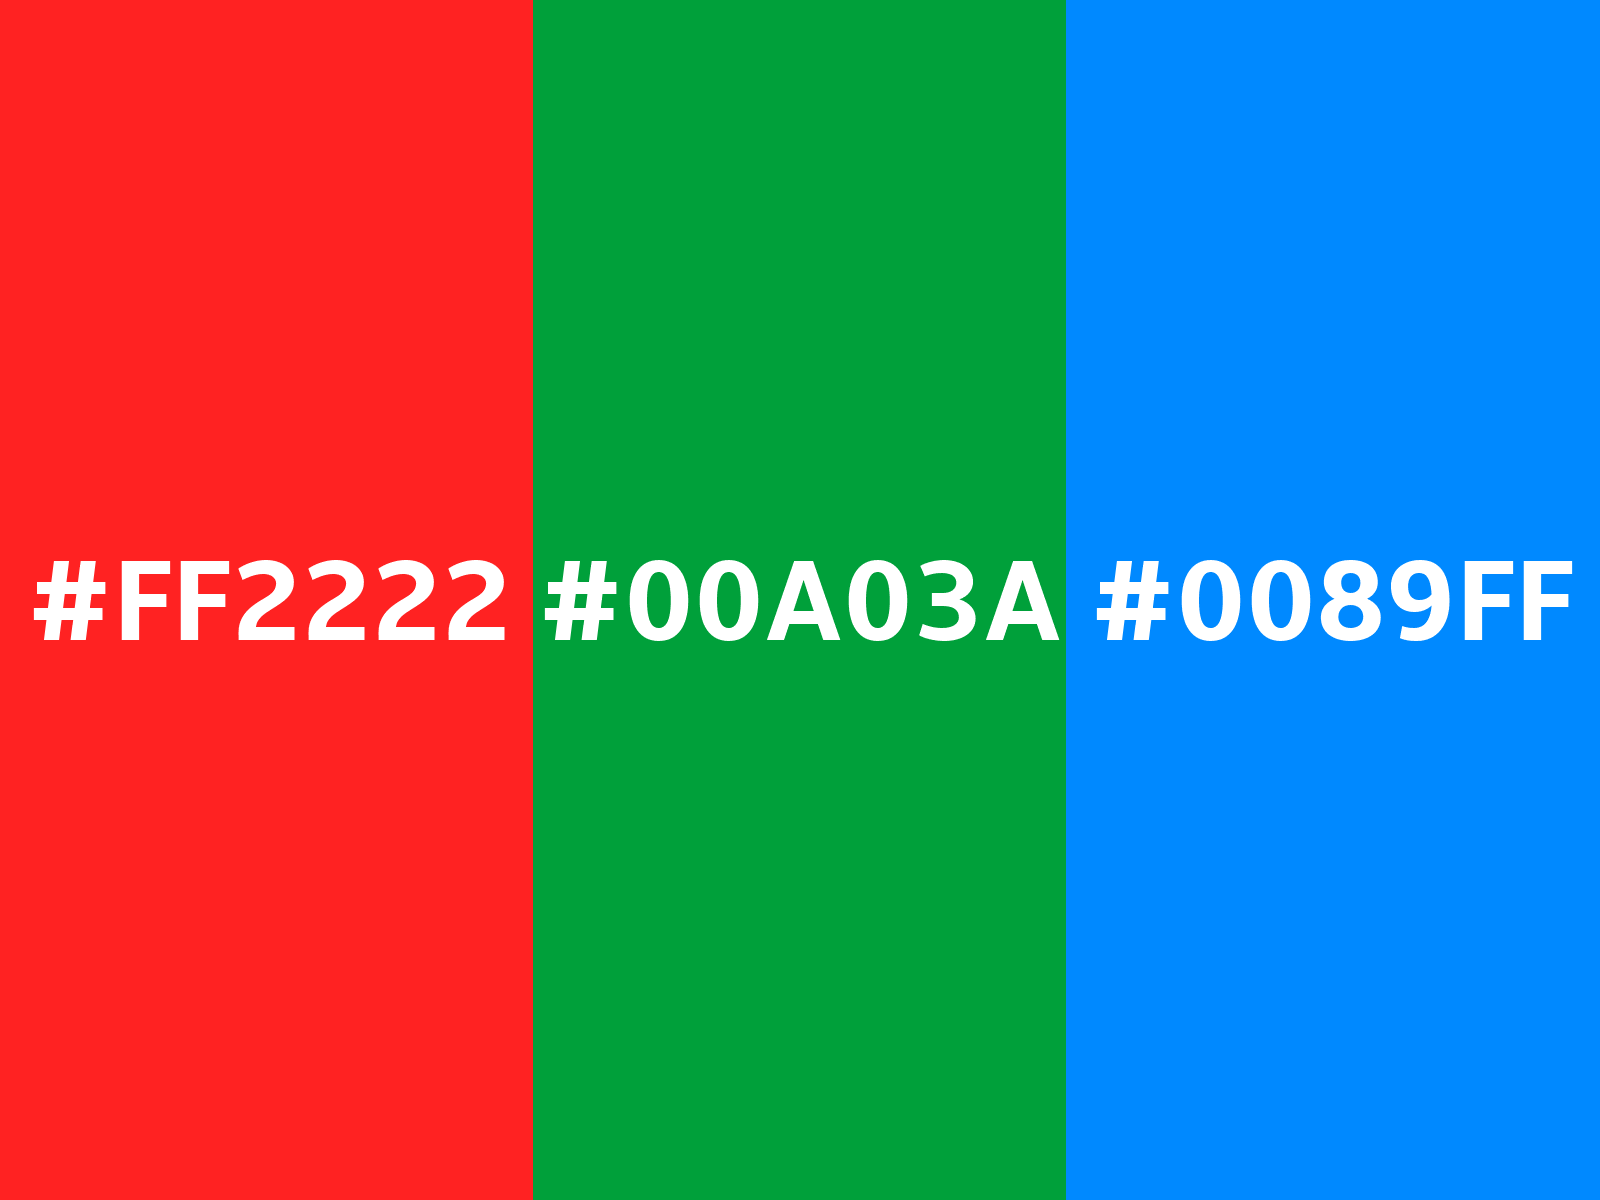 Chuyển đổi màu sắc dễ dàng hơn bao giờ hết cùng với Tkinter! Hãy khám phá hình ảnh để tìm hiểu về cách tô màu nền độ dốc tuyệt đẹp cho chương trình tkinter của bạn. Bắt đầu với cách chuyển đổi màu sắc từ RGB sang 255, 34, 34 đơn giản nhất.